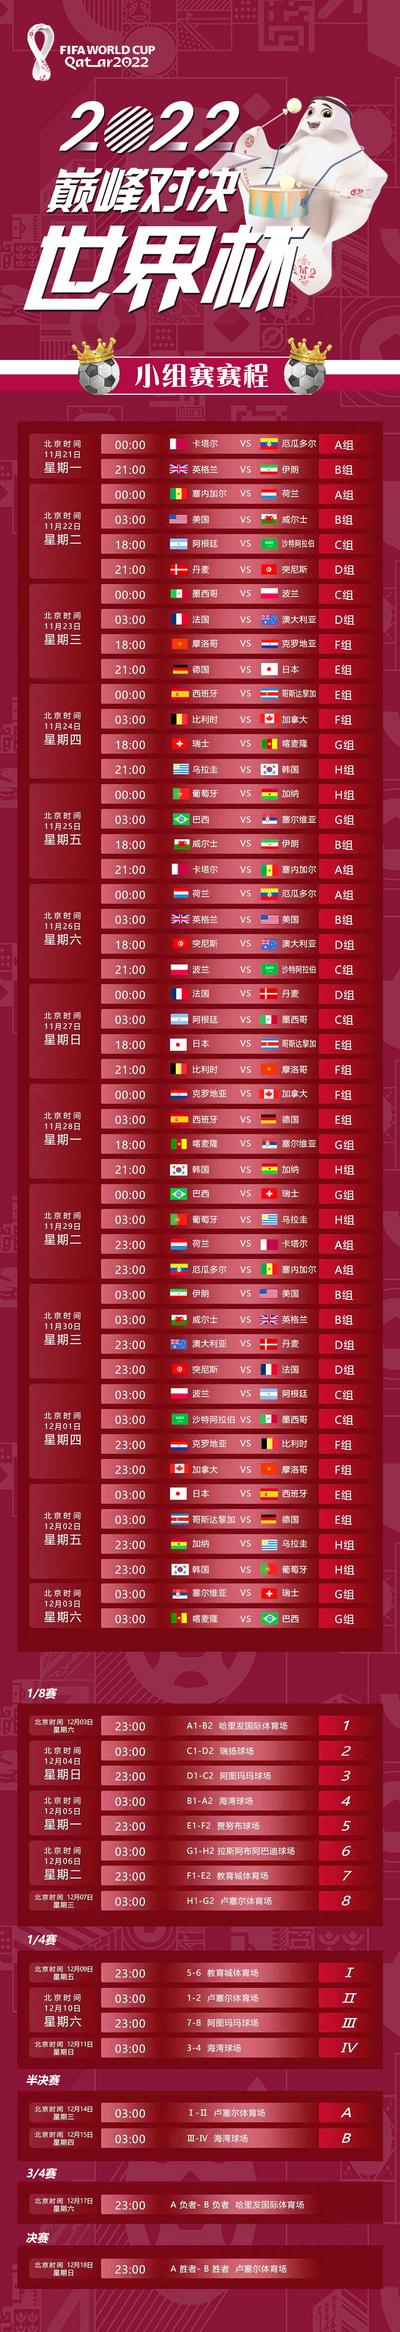 南门网 海报 长图 2022 世界杯 长图 赛程 球赛 足球 时间表